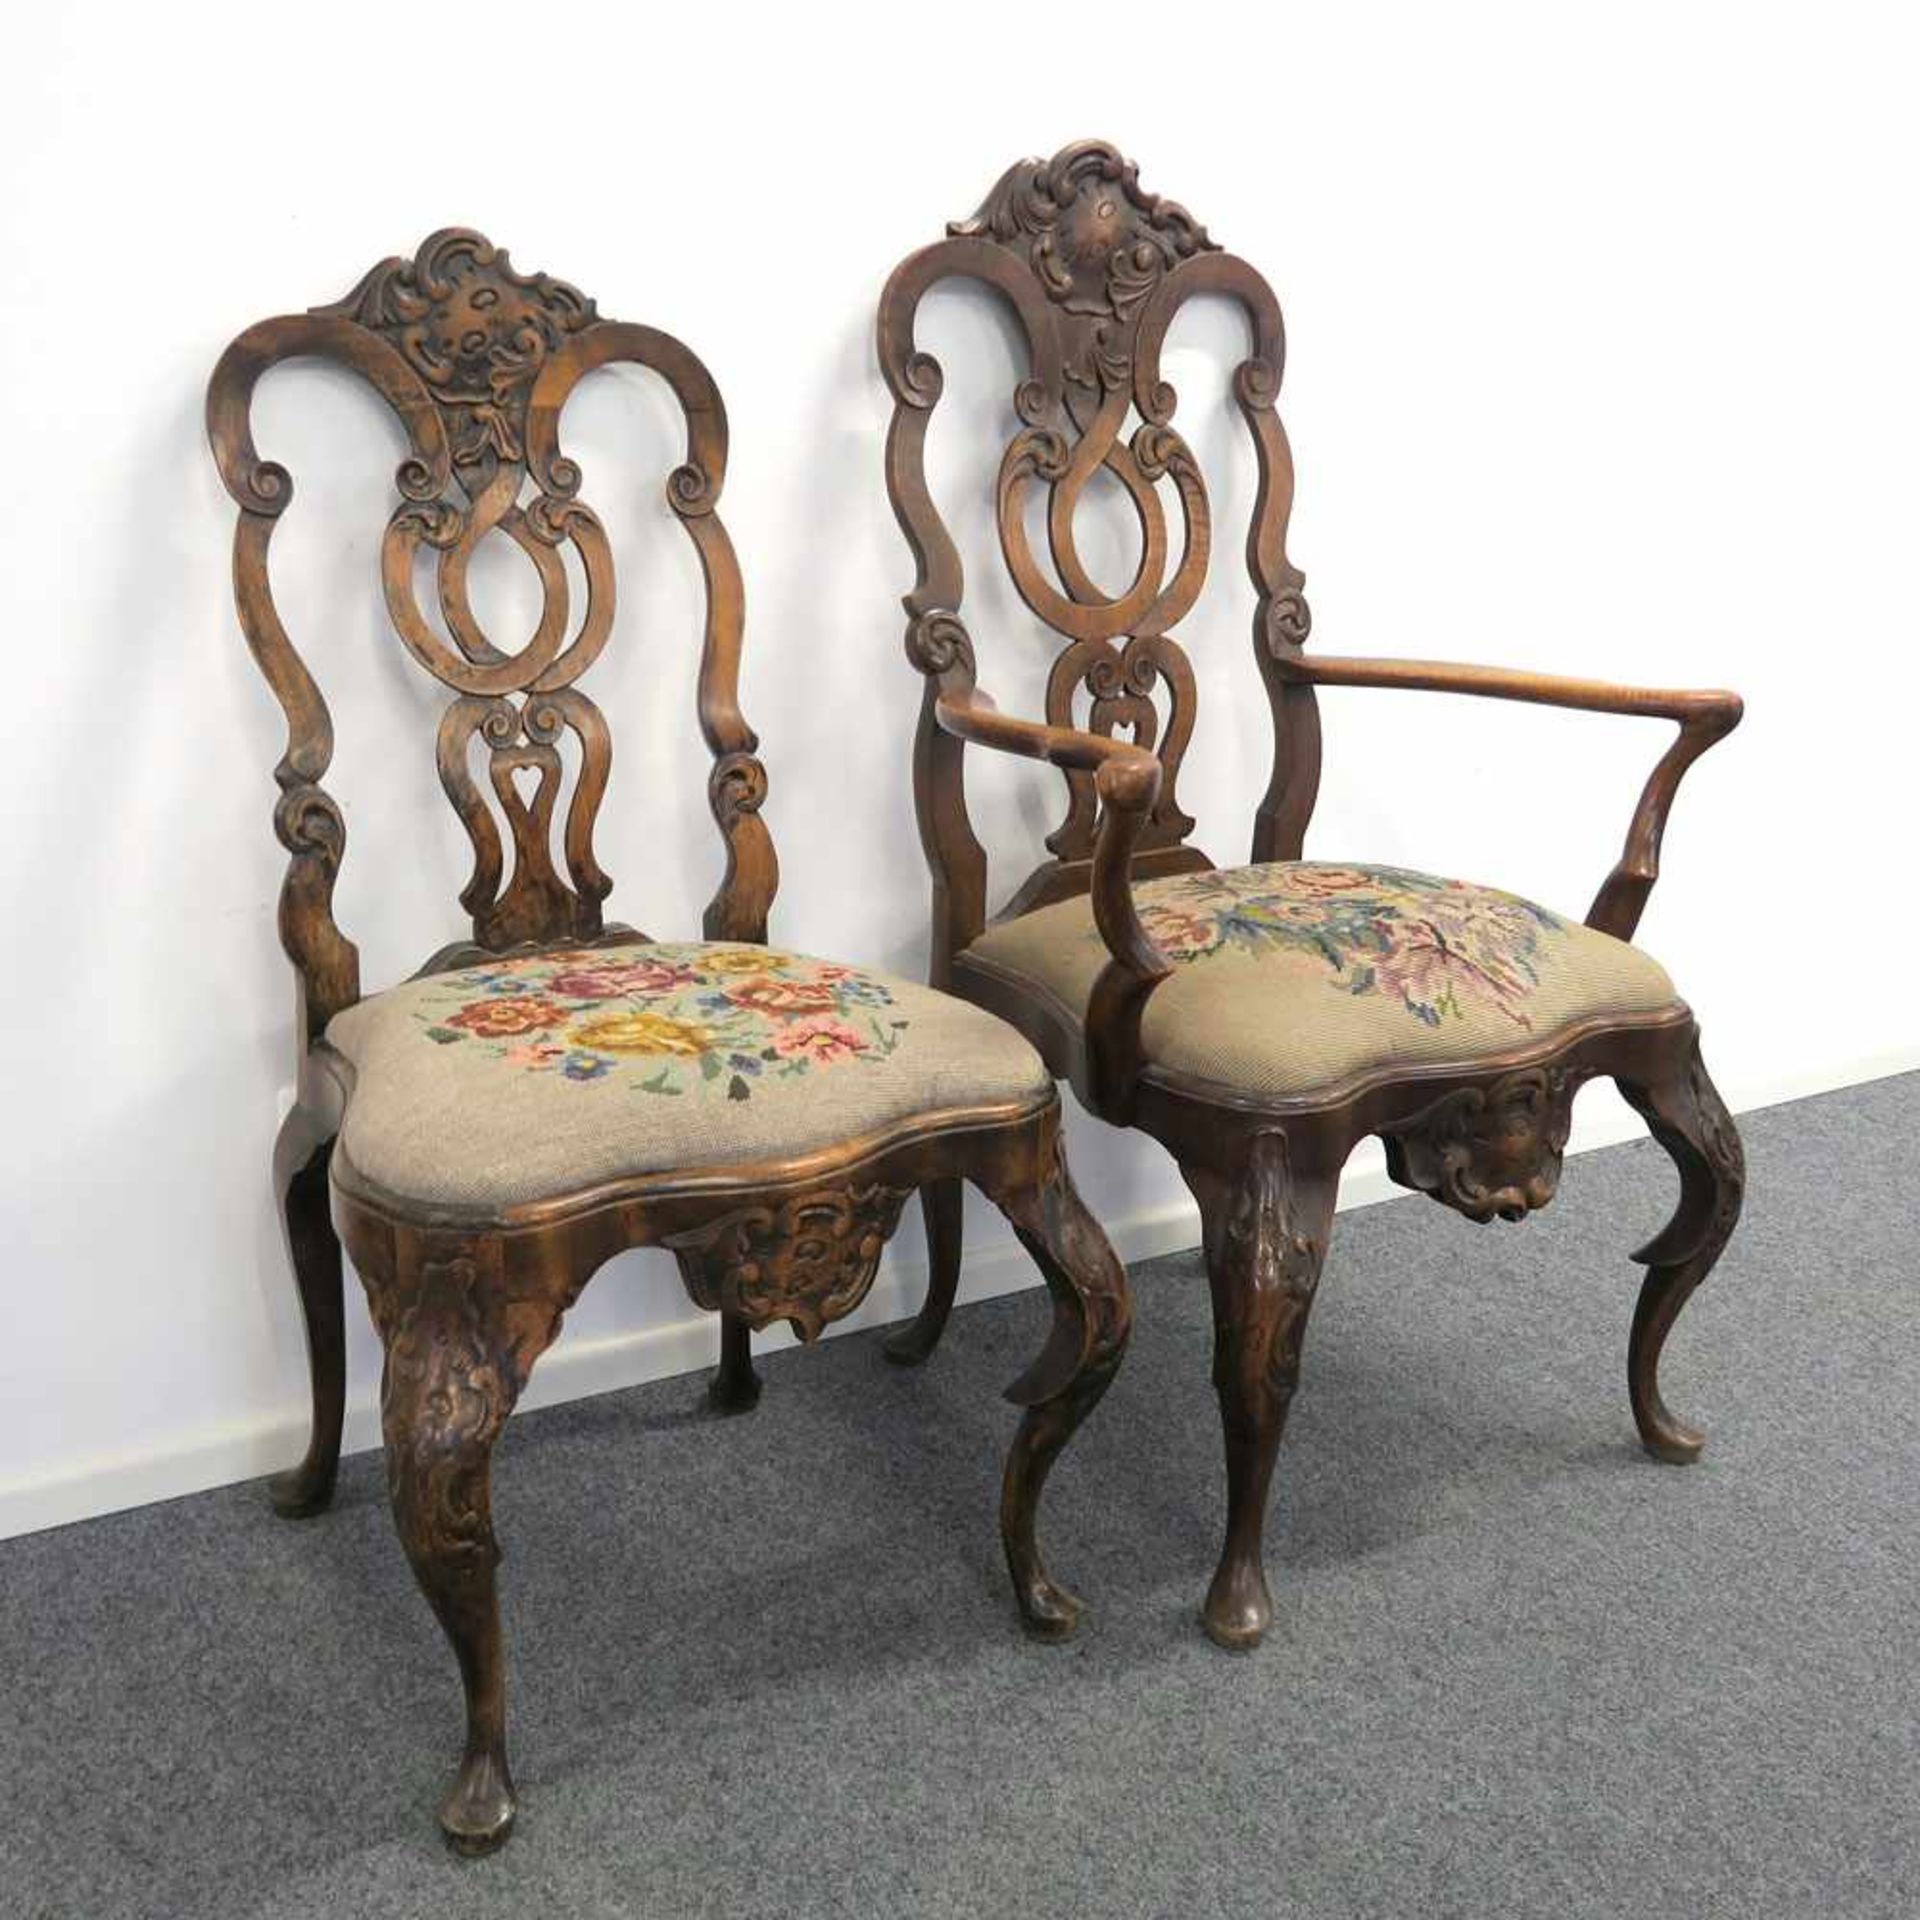 Stuhl und ArmlehnstuhlBarockstil. Holz, gebeizt, reich beschnitzt. Geschweifte Sitzfläche auf